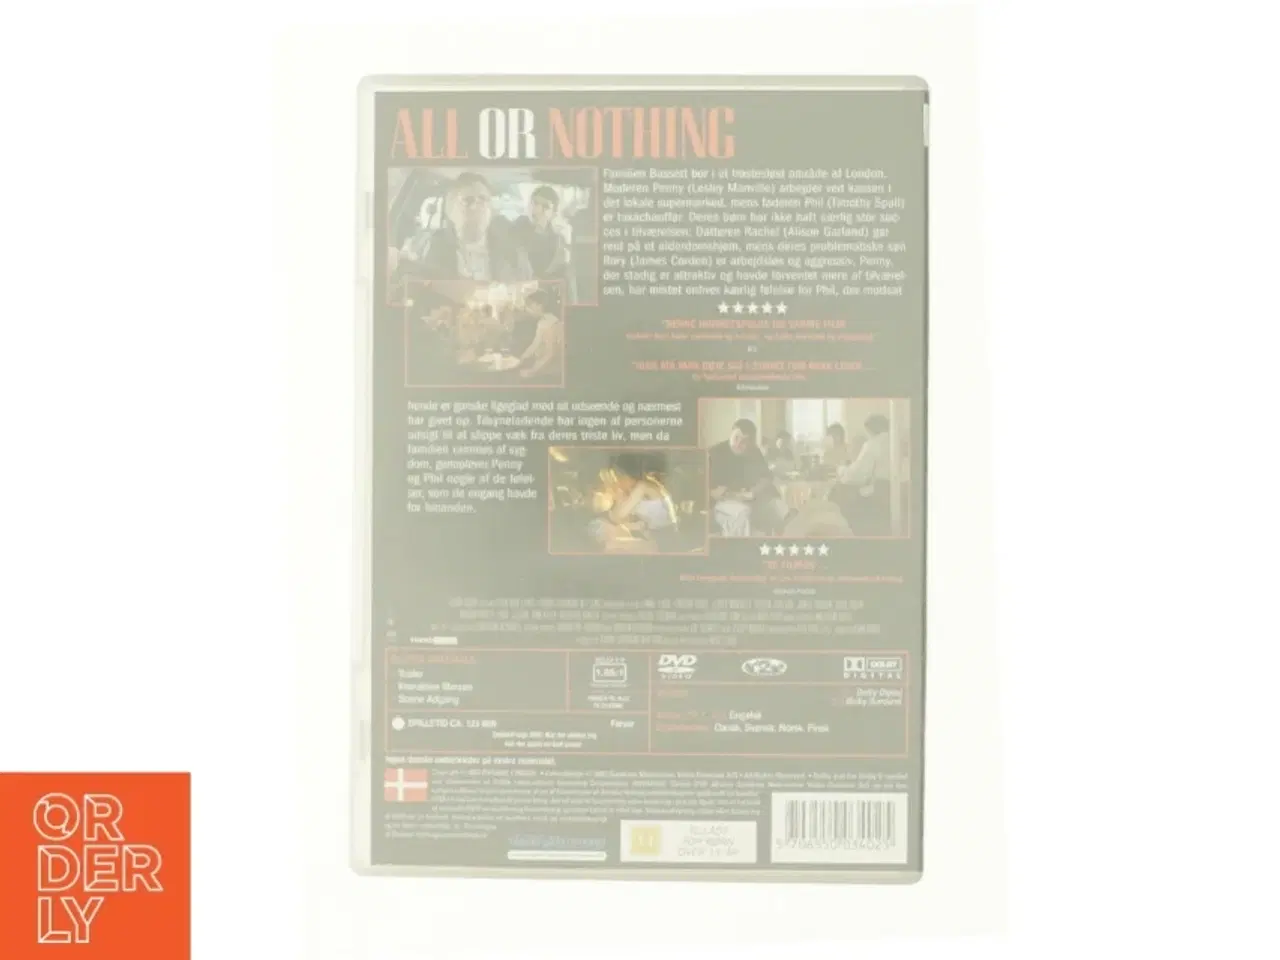 Billede 3 - All or nothing fra DVD